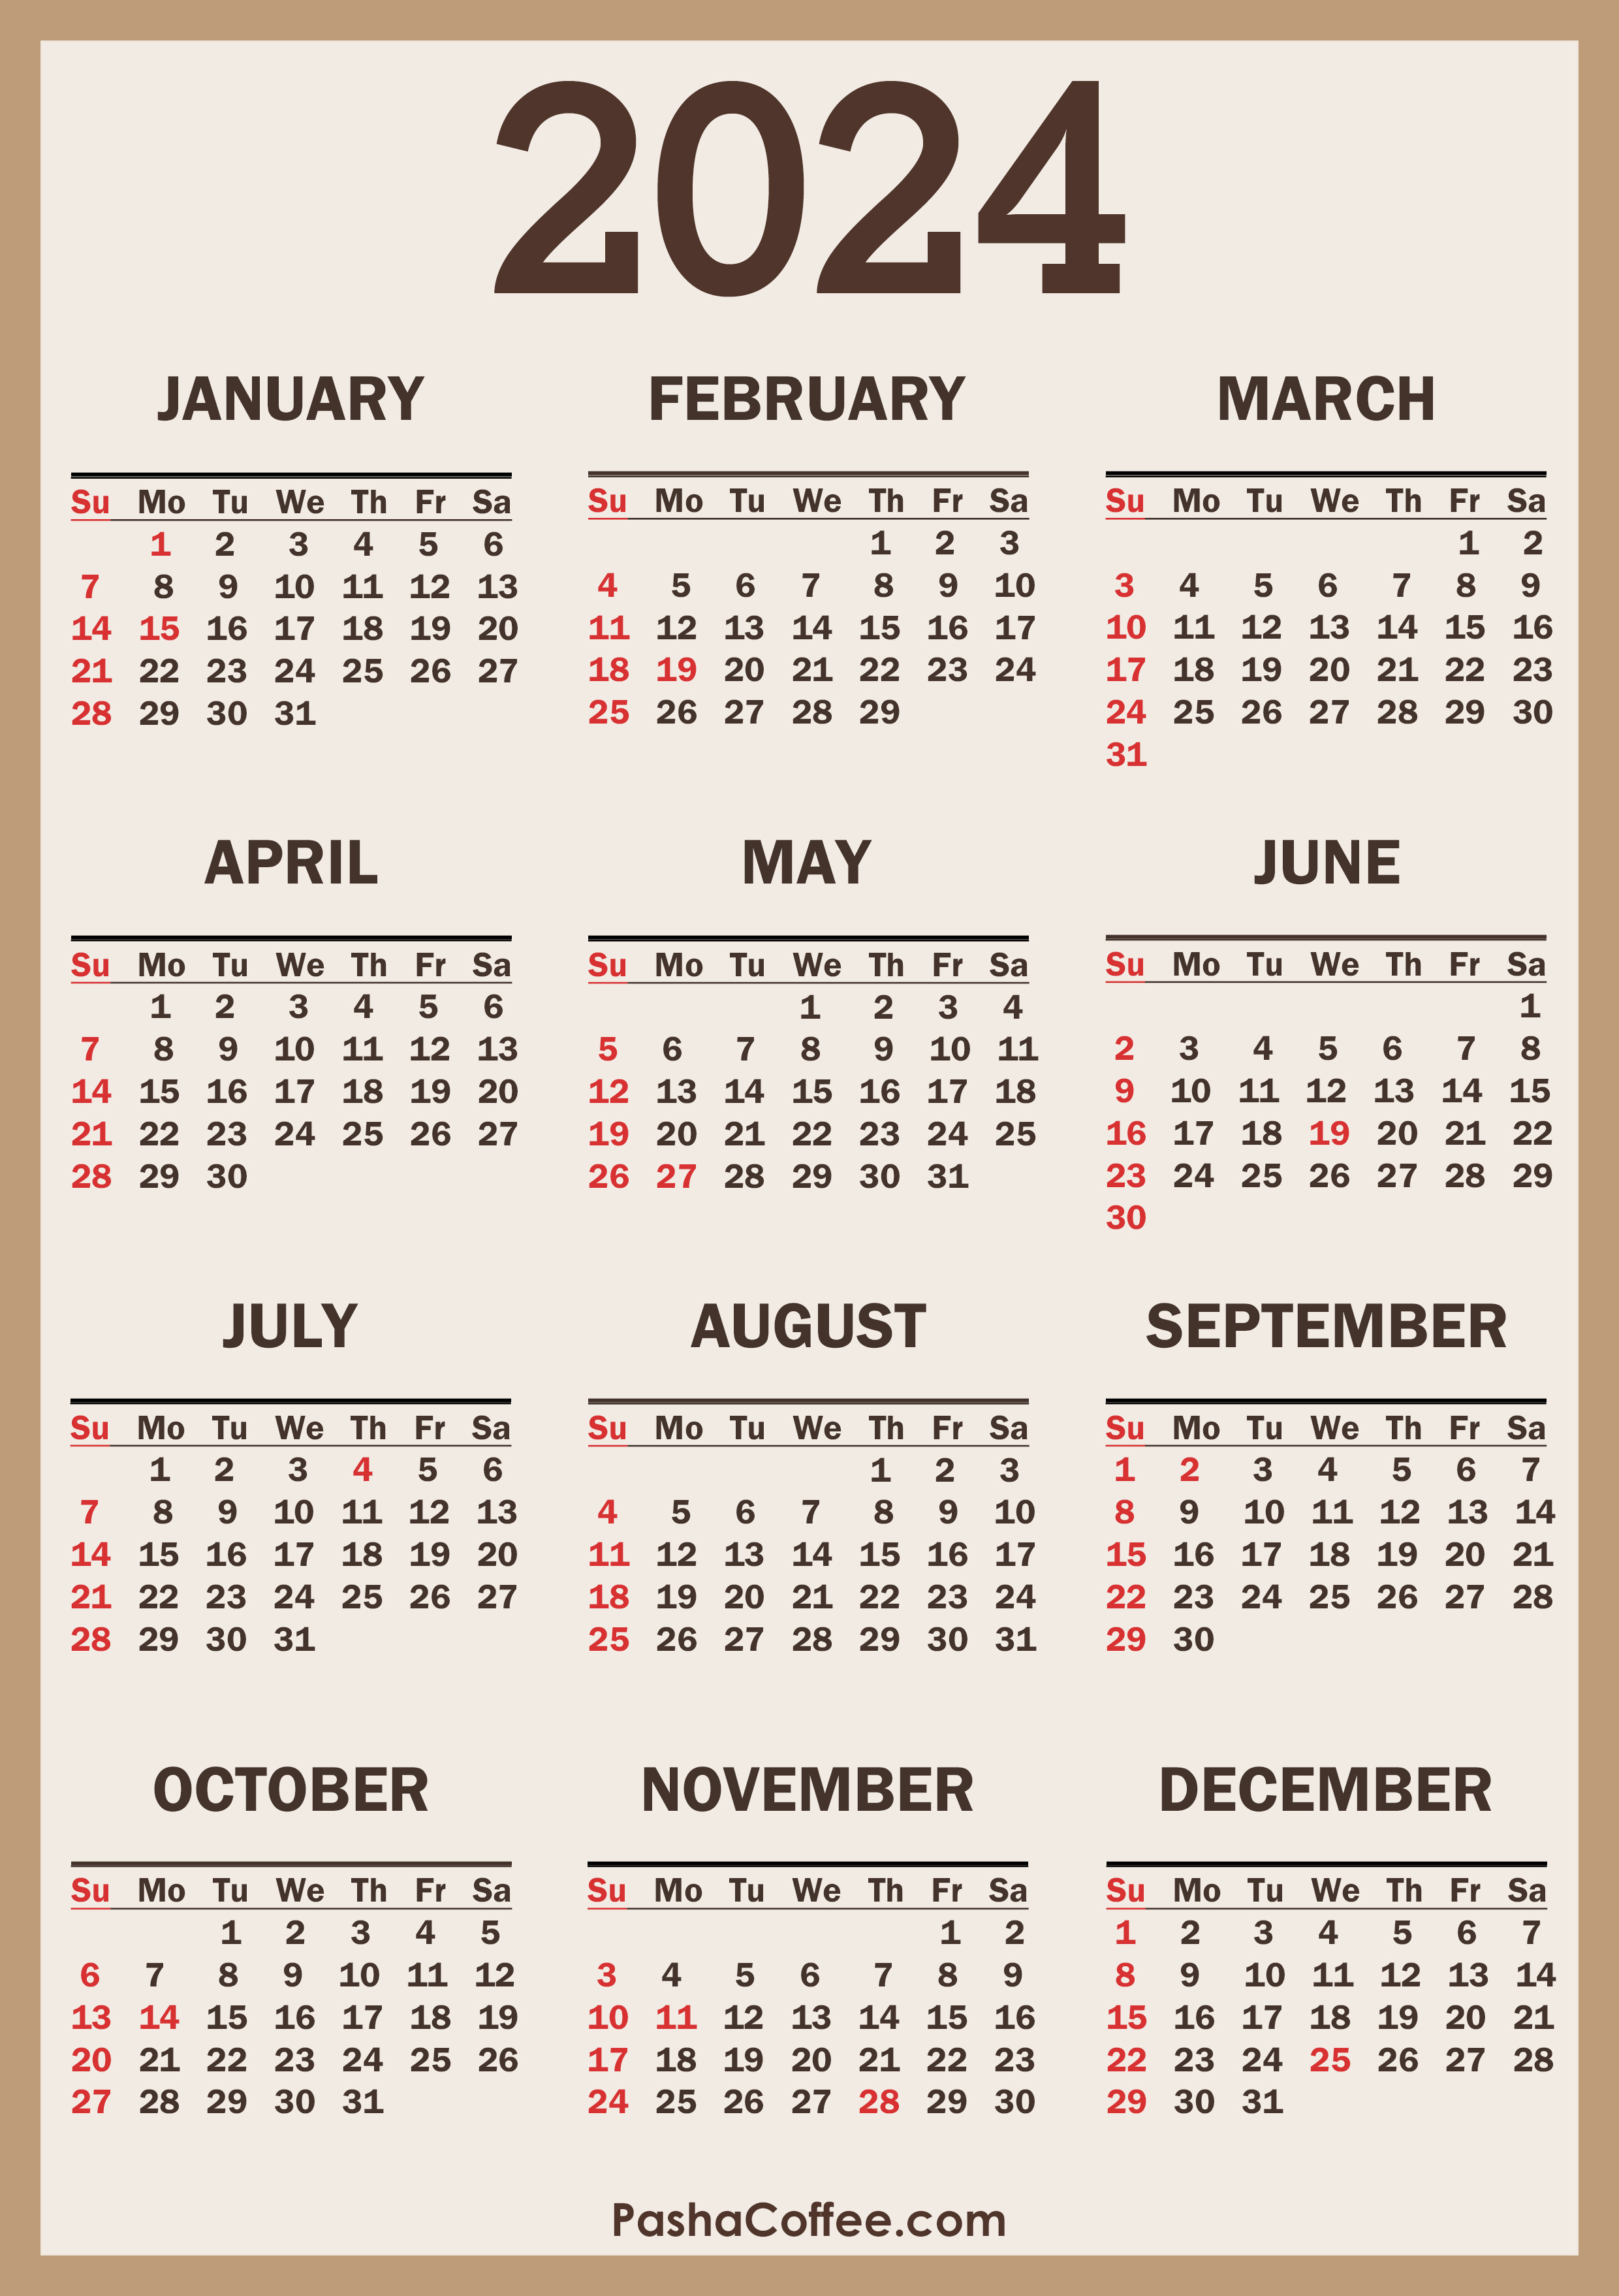 2024 Calendar Holidays US Beige SS 001 